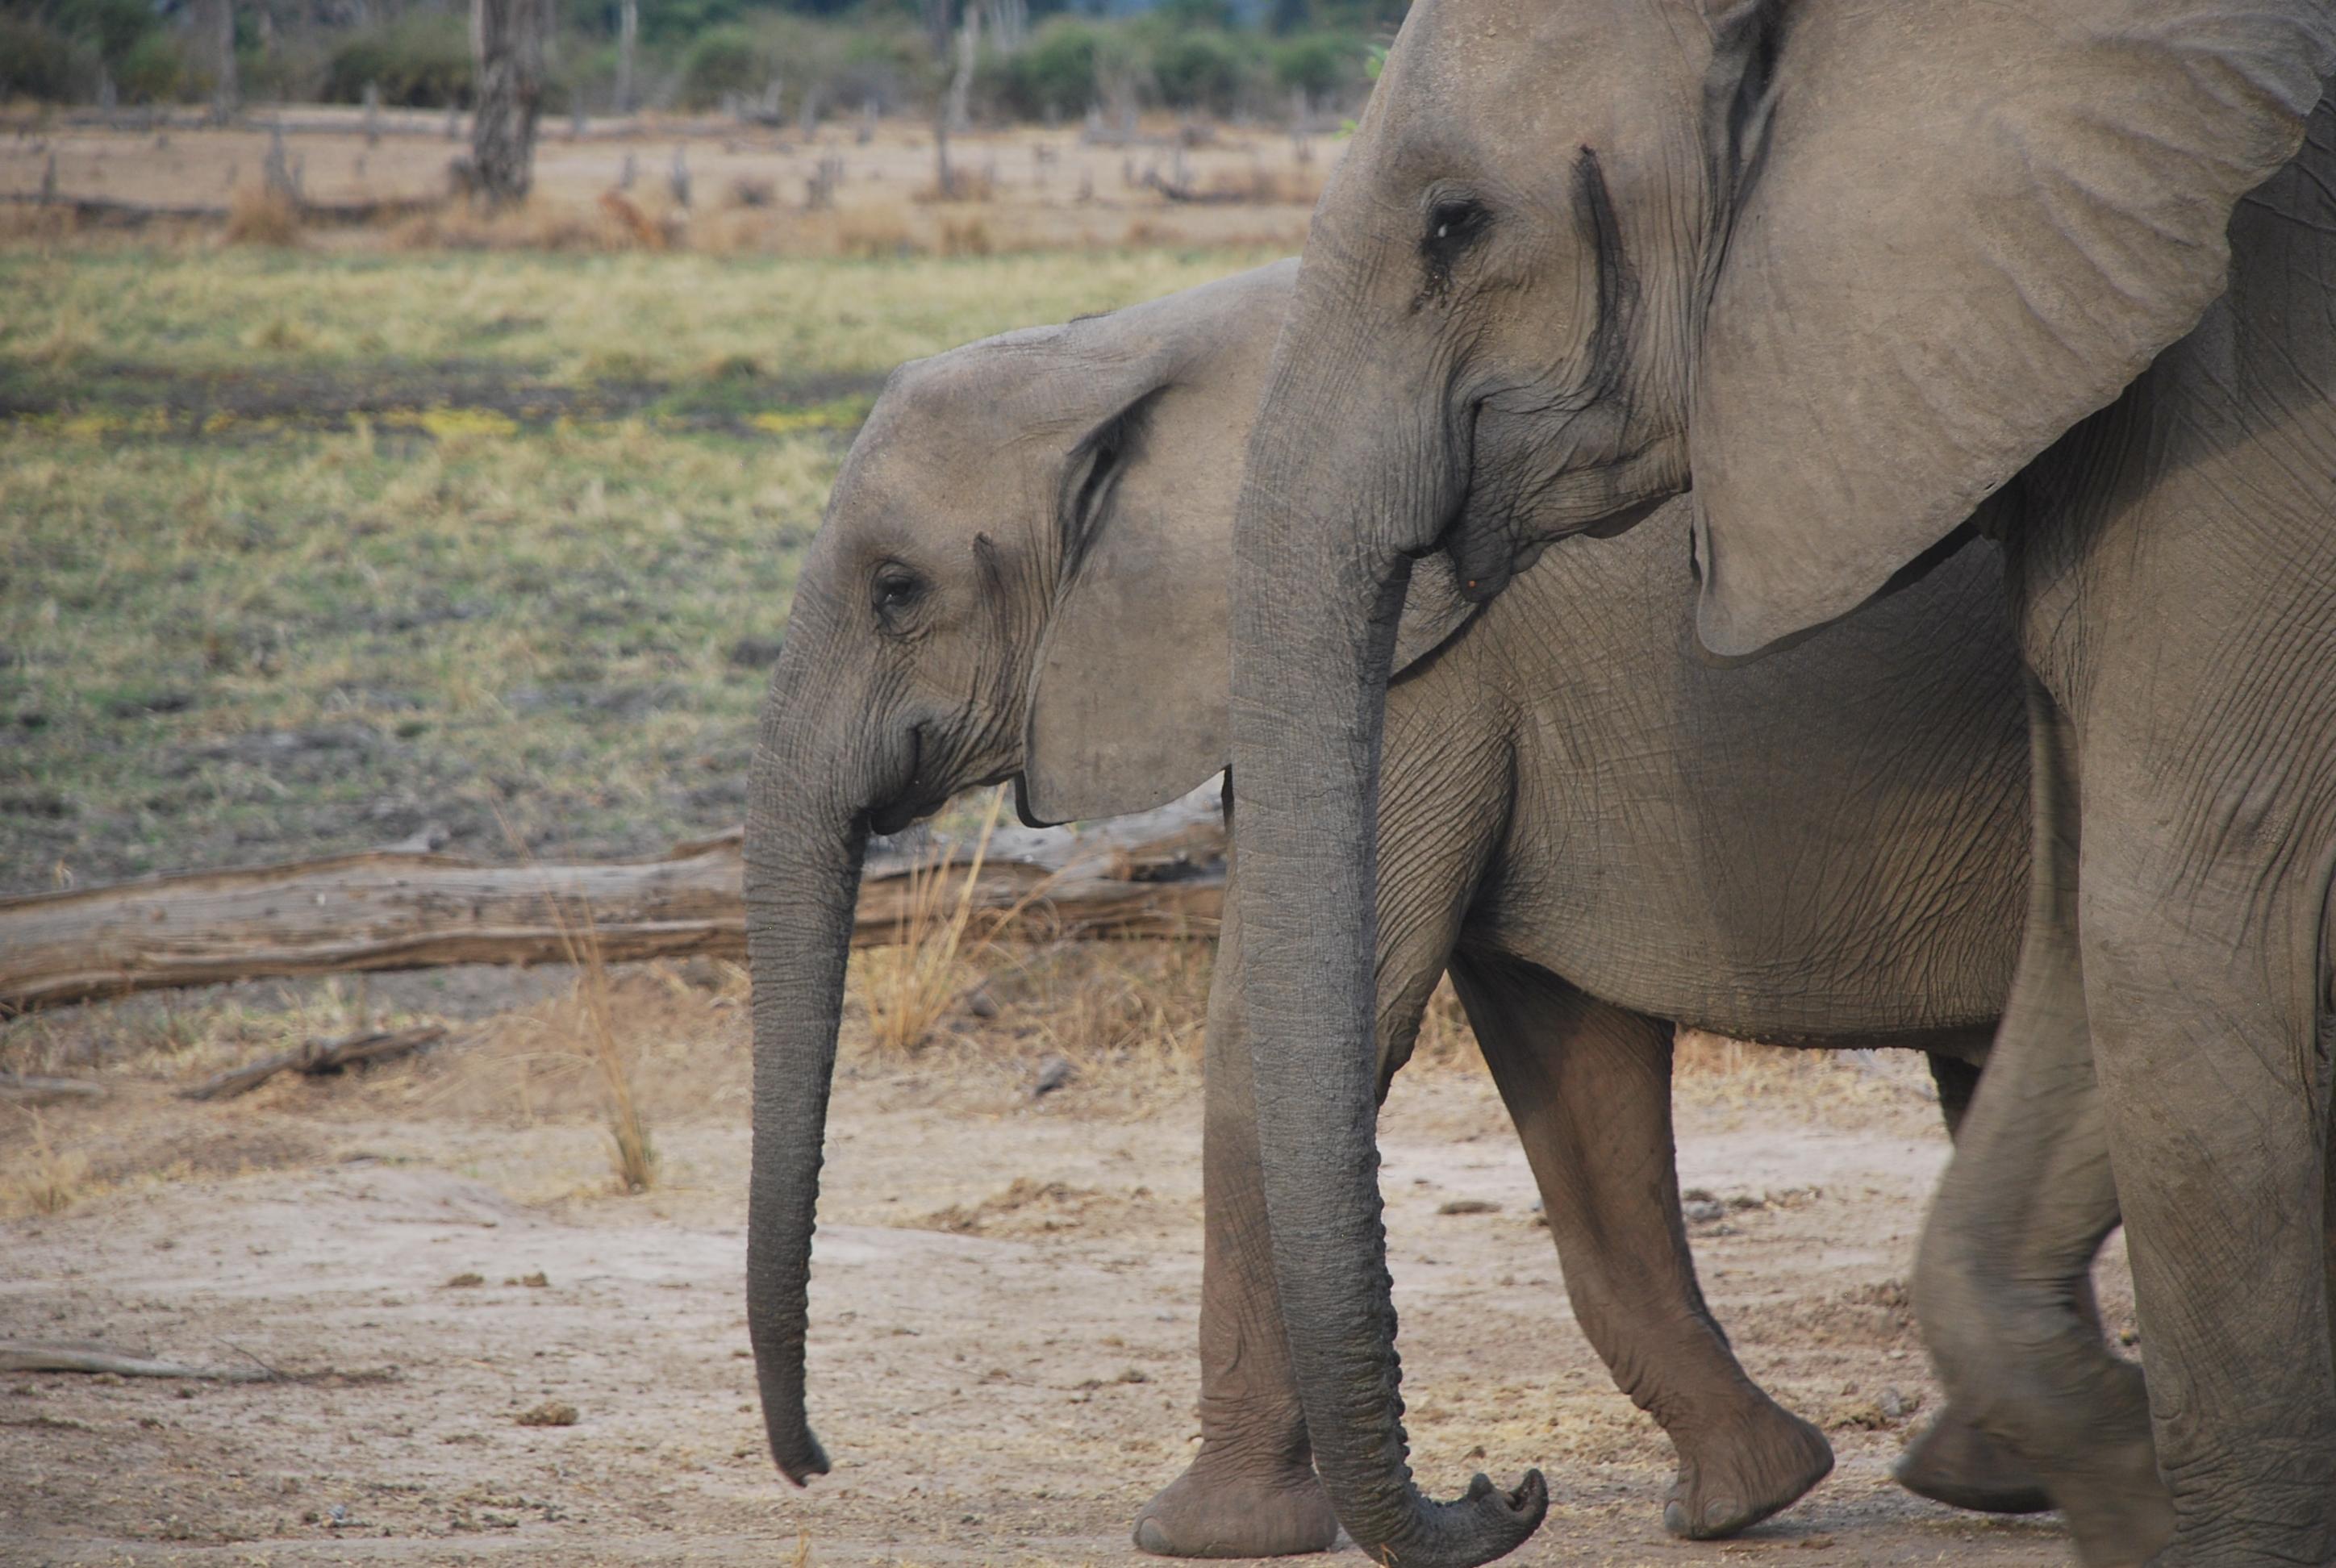 Profiles of two eastern African elephants walking side by side.